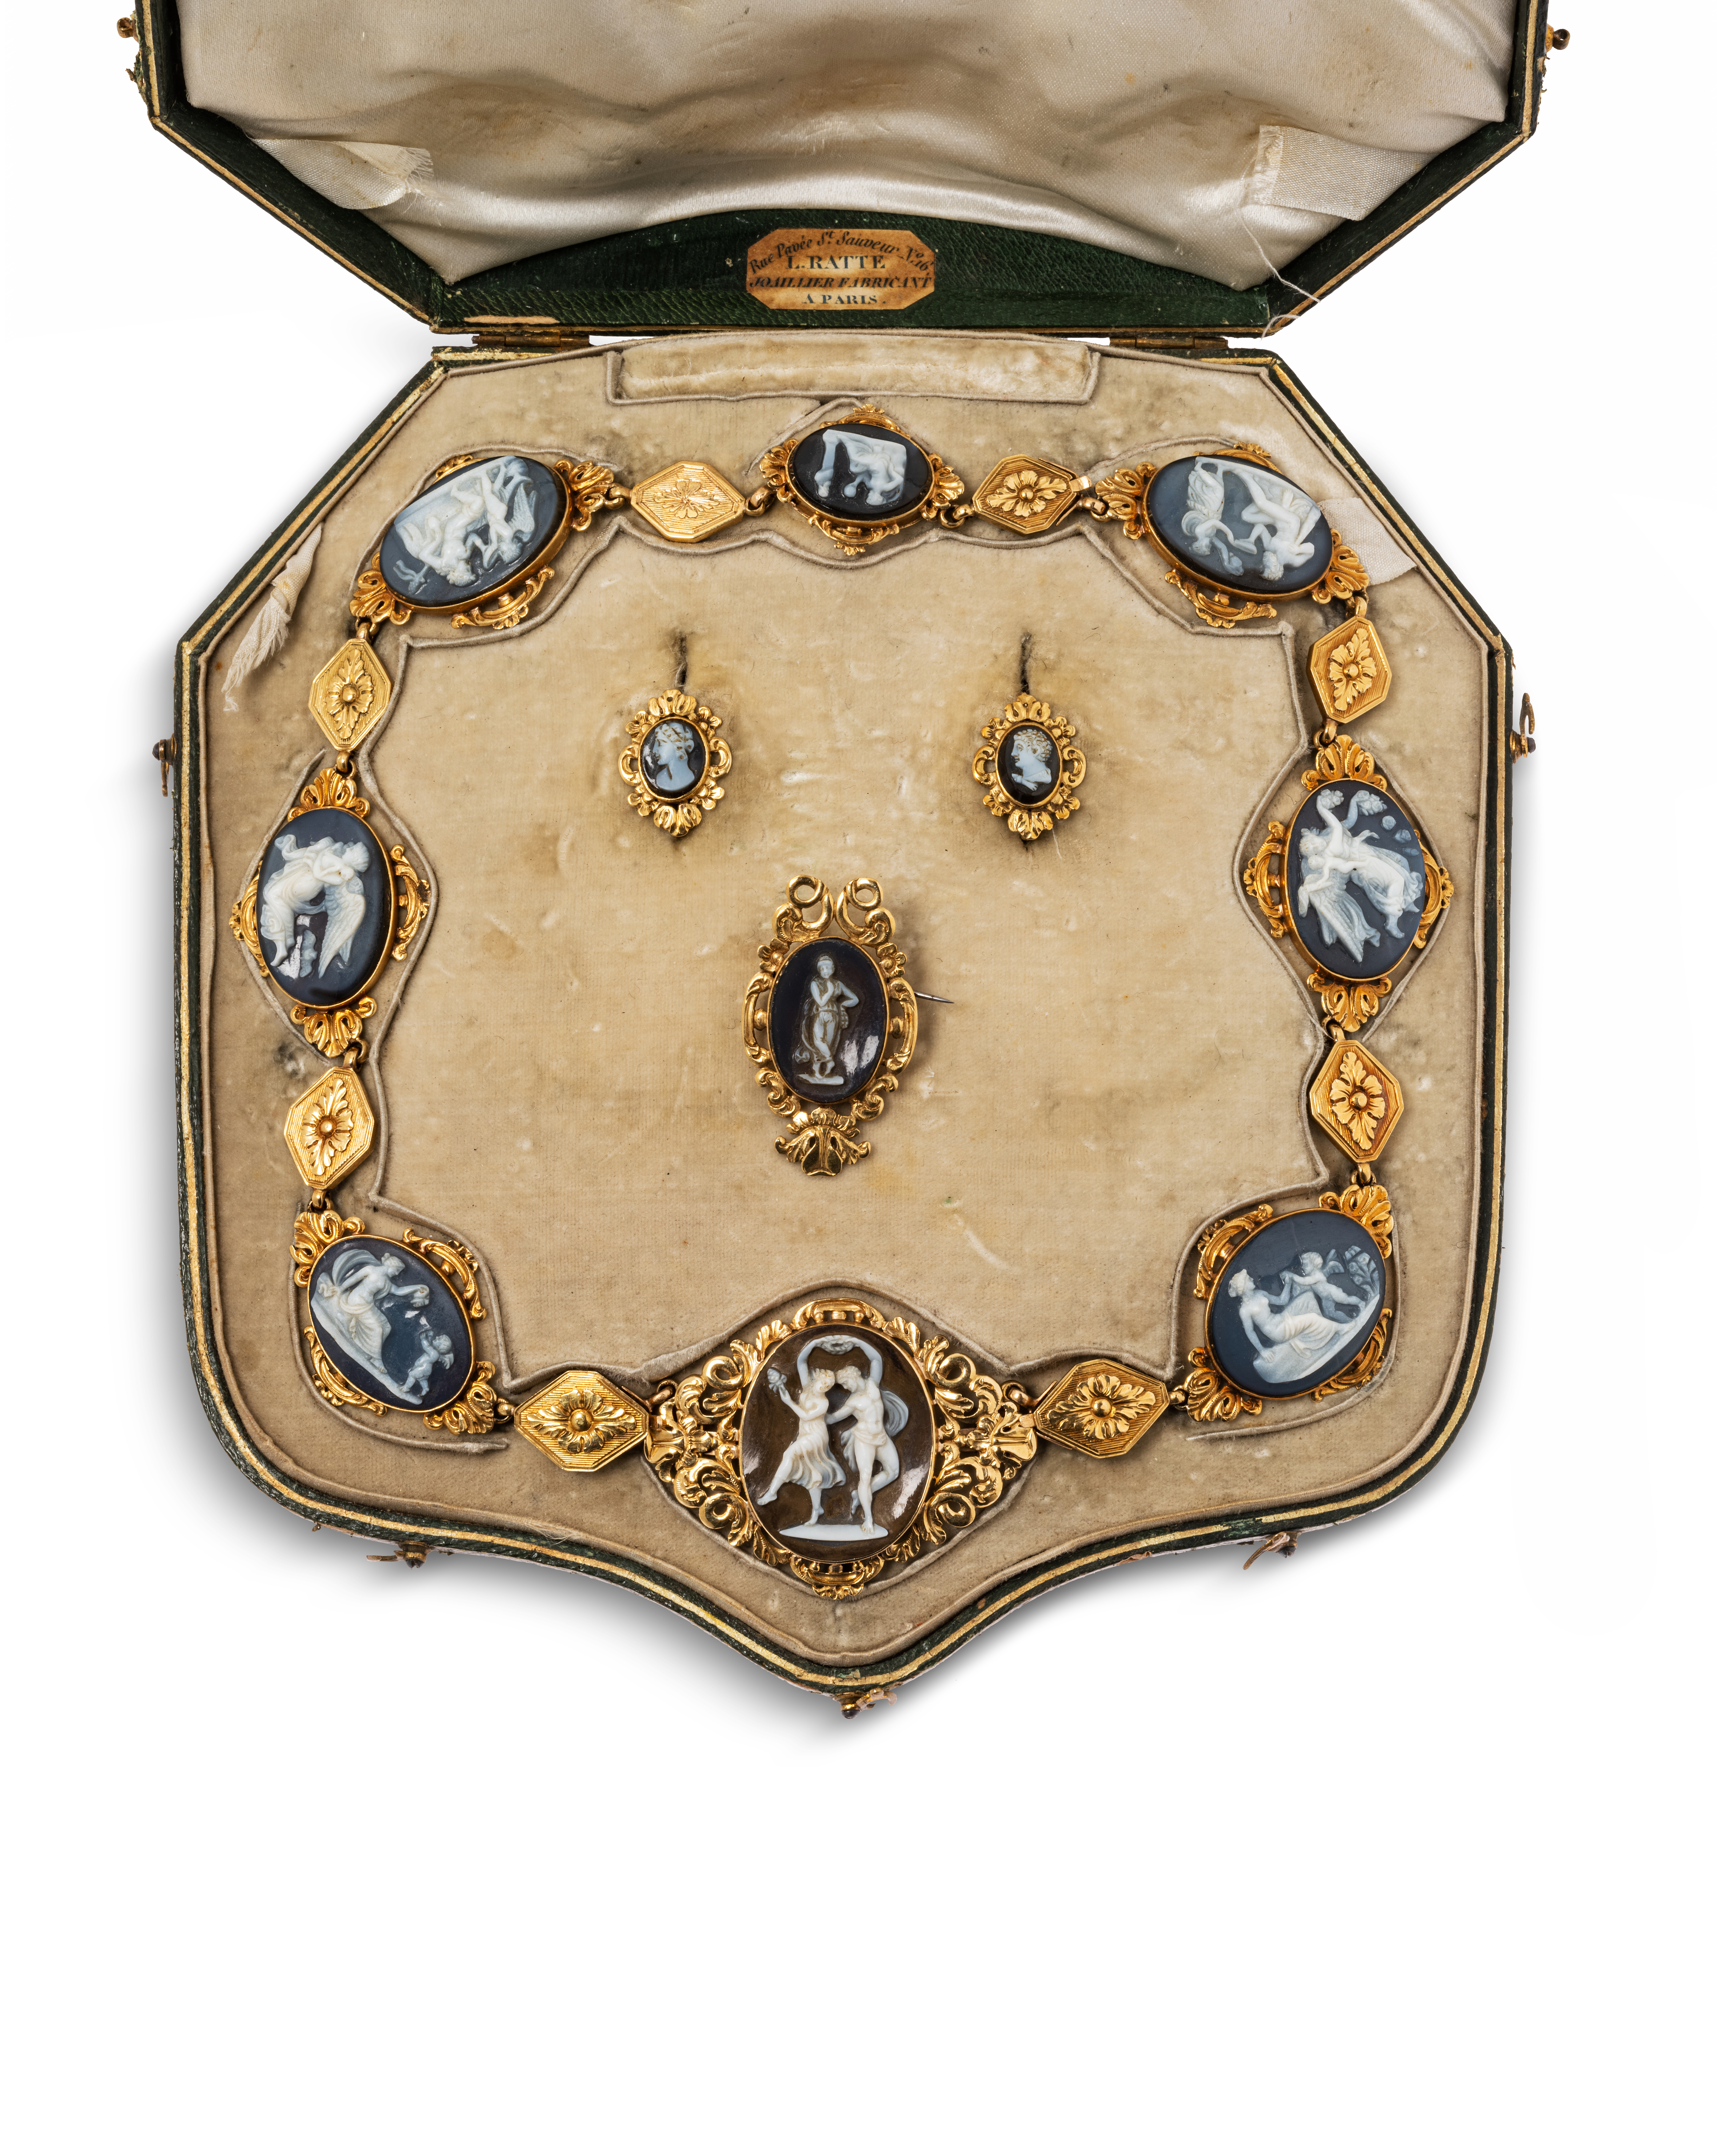 Lot 1 : Parure en or 18K à transformation sur le thème de l'amour comprenant : un collier, une broche et une paire de boucles d'oreilles ornées de camées. Travail du premier tiers du XIXe siècle. 